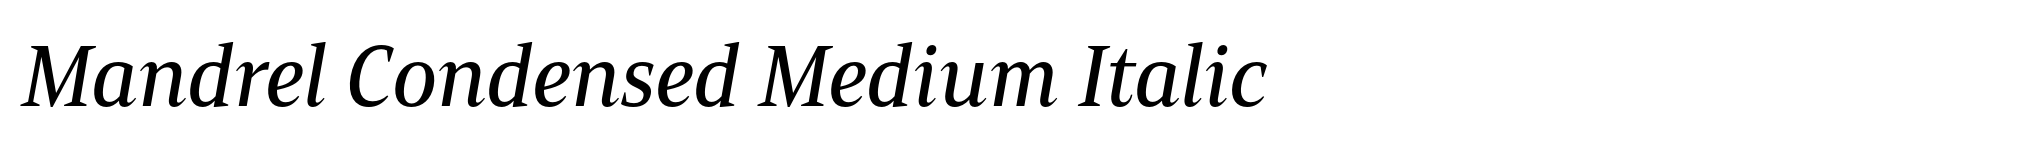 Mandrel Condensed Medium Italic image